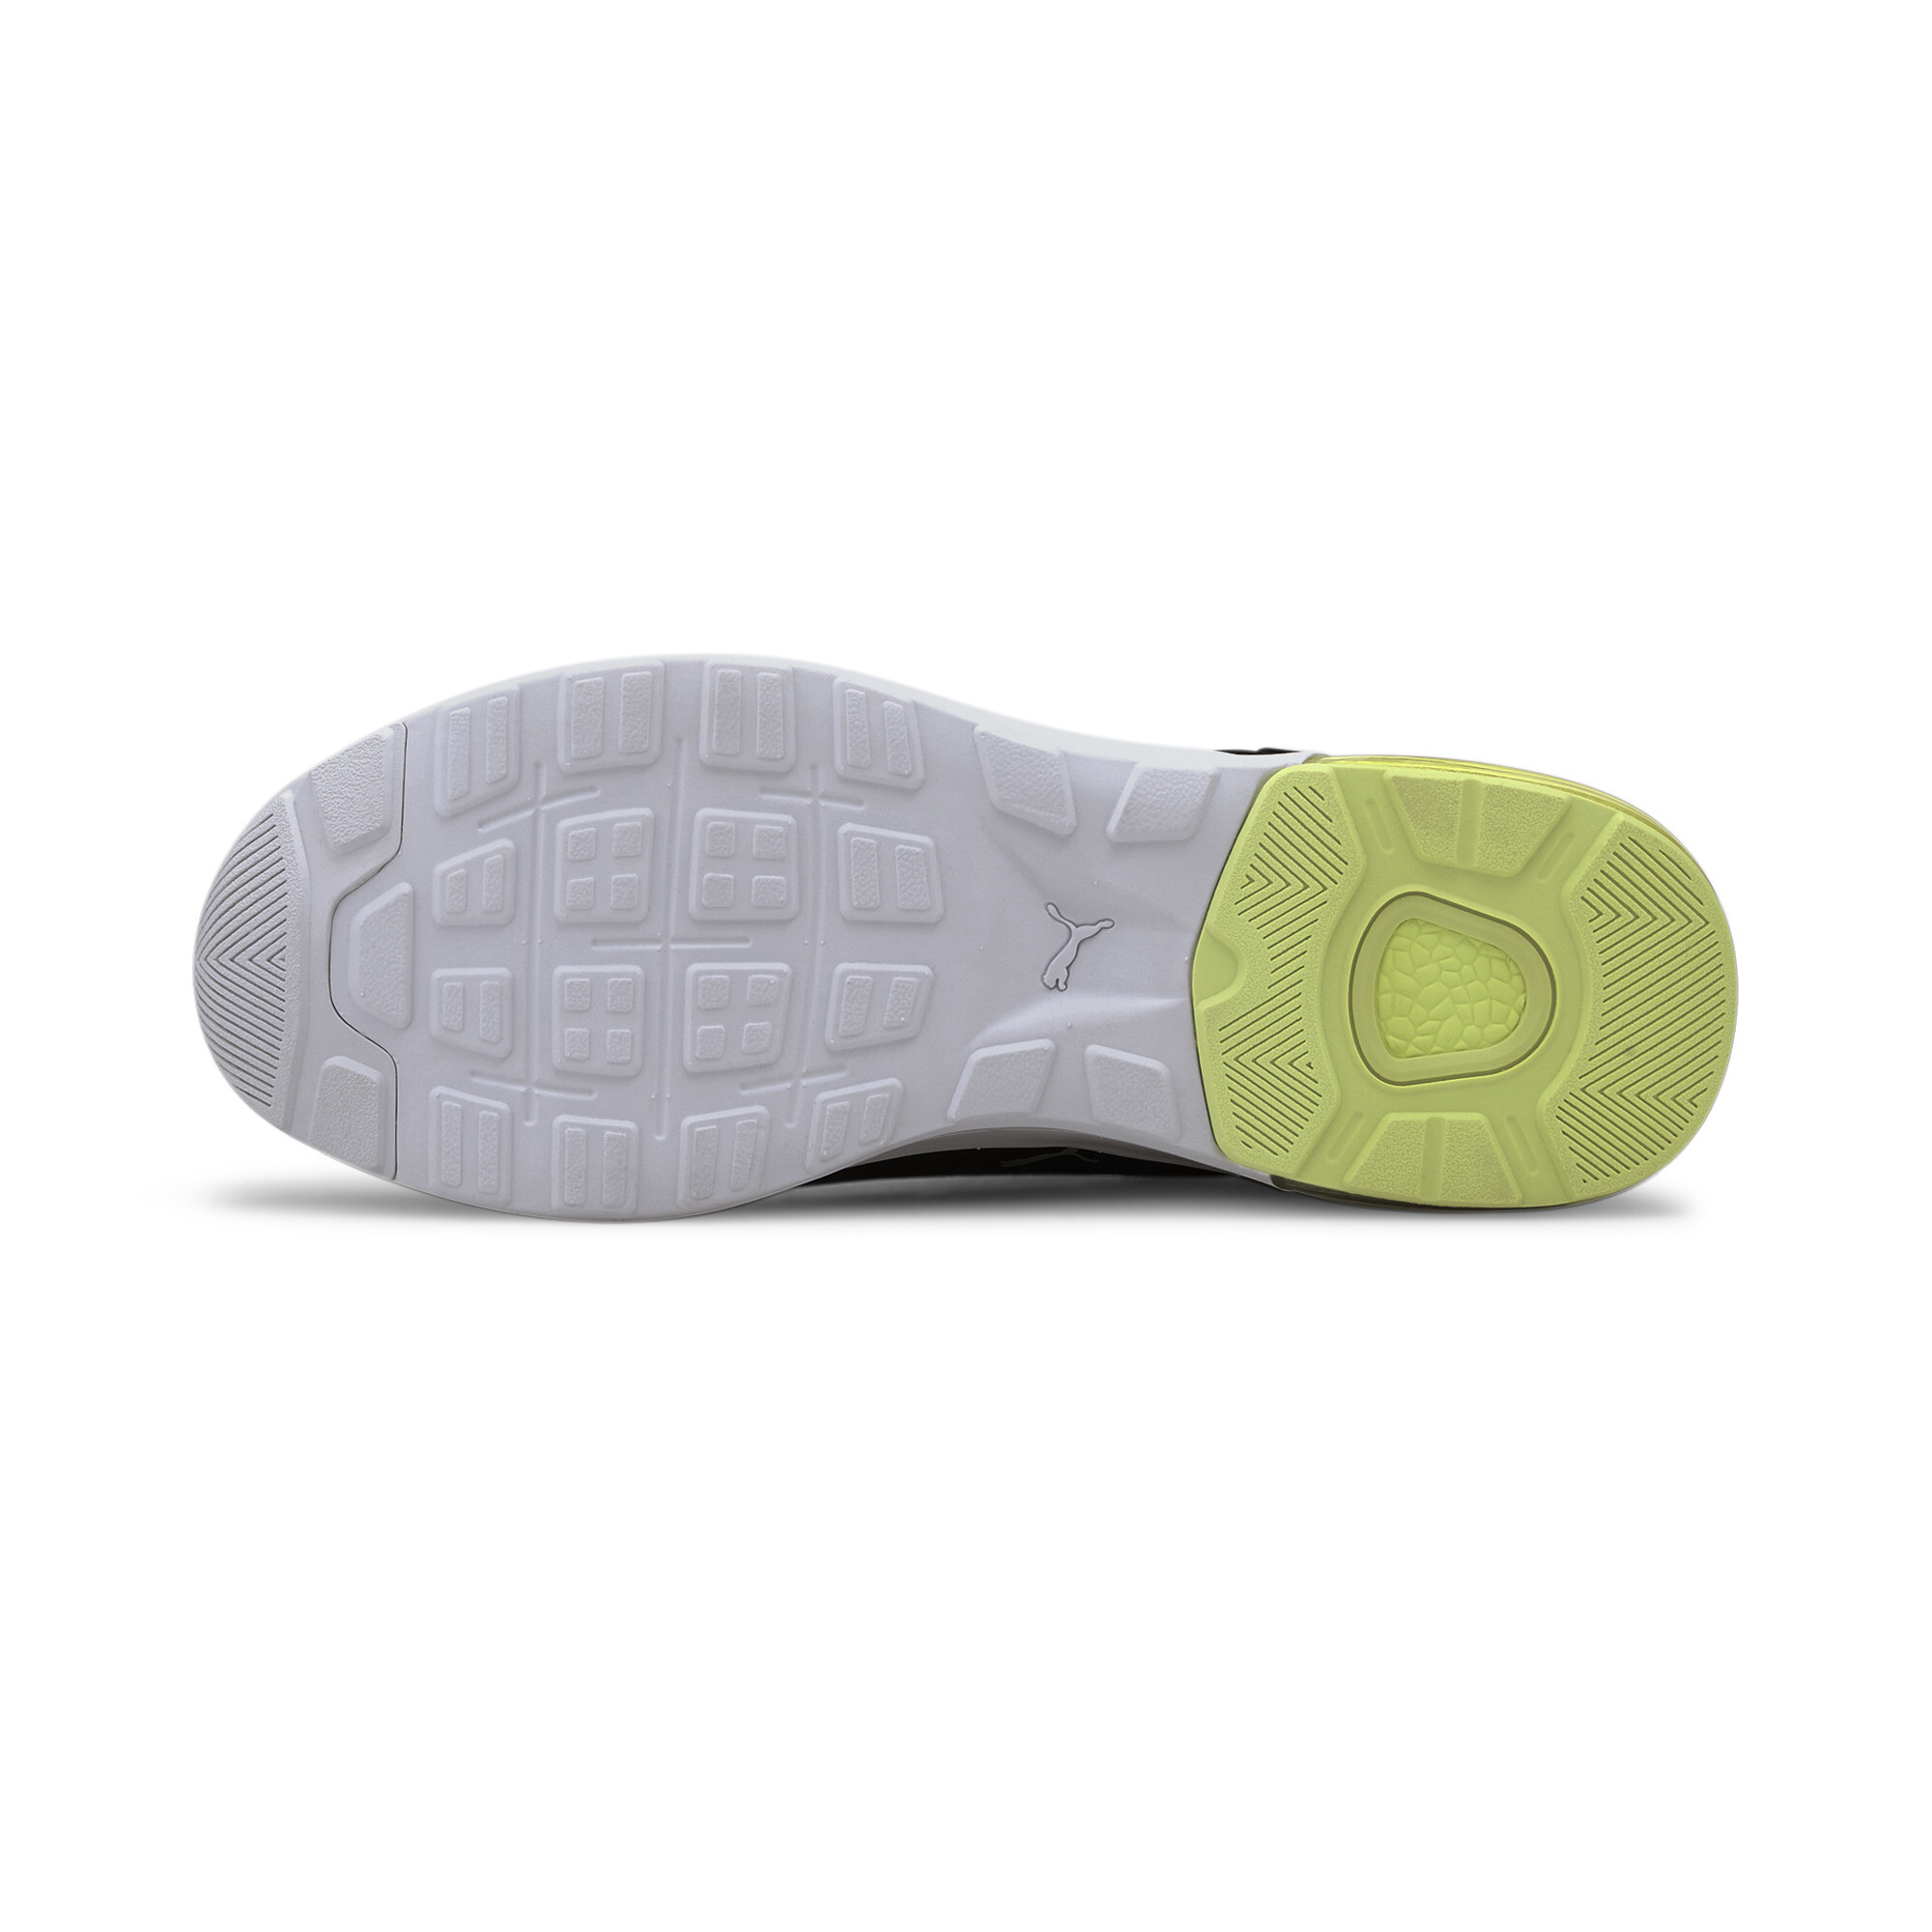 Indexbild 11 - PUMA Electron Street Era Sneaker Unisex Schuhe Basics Neu